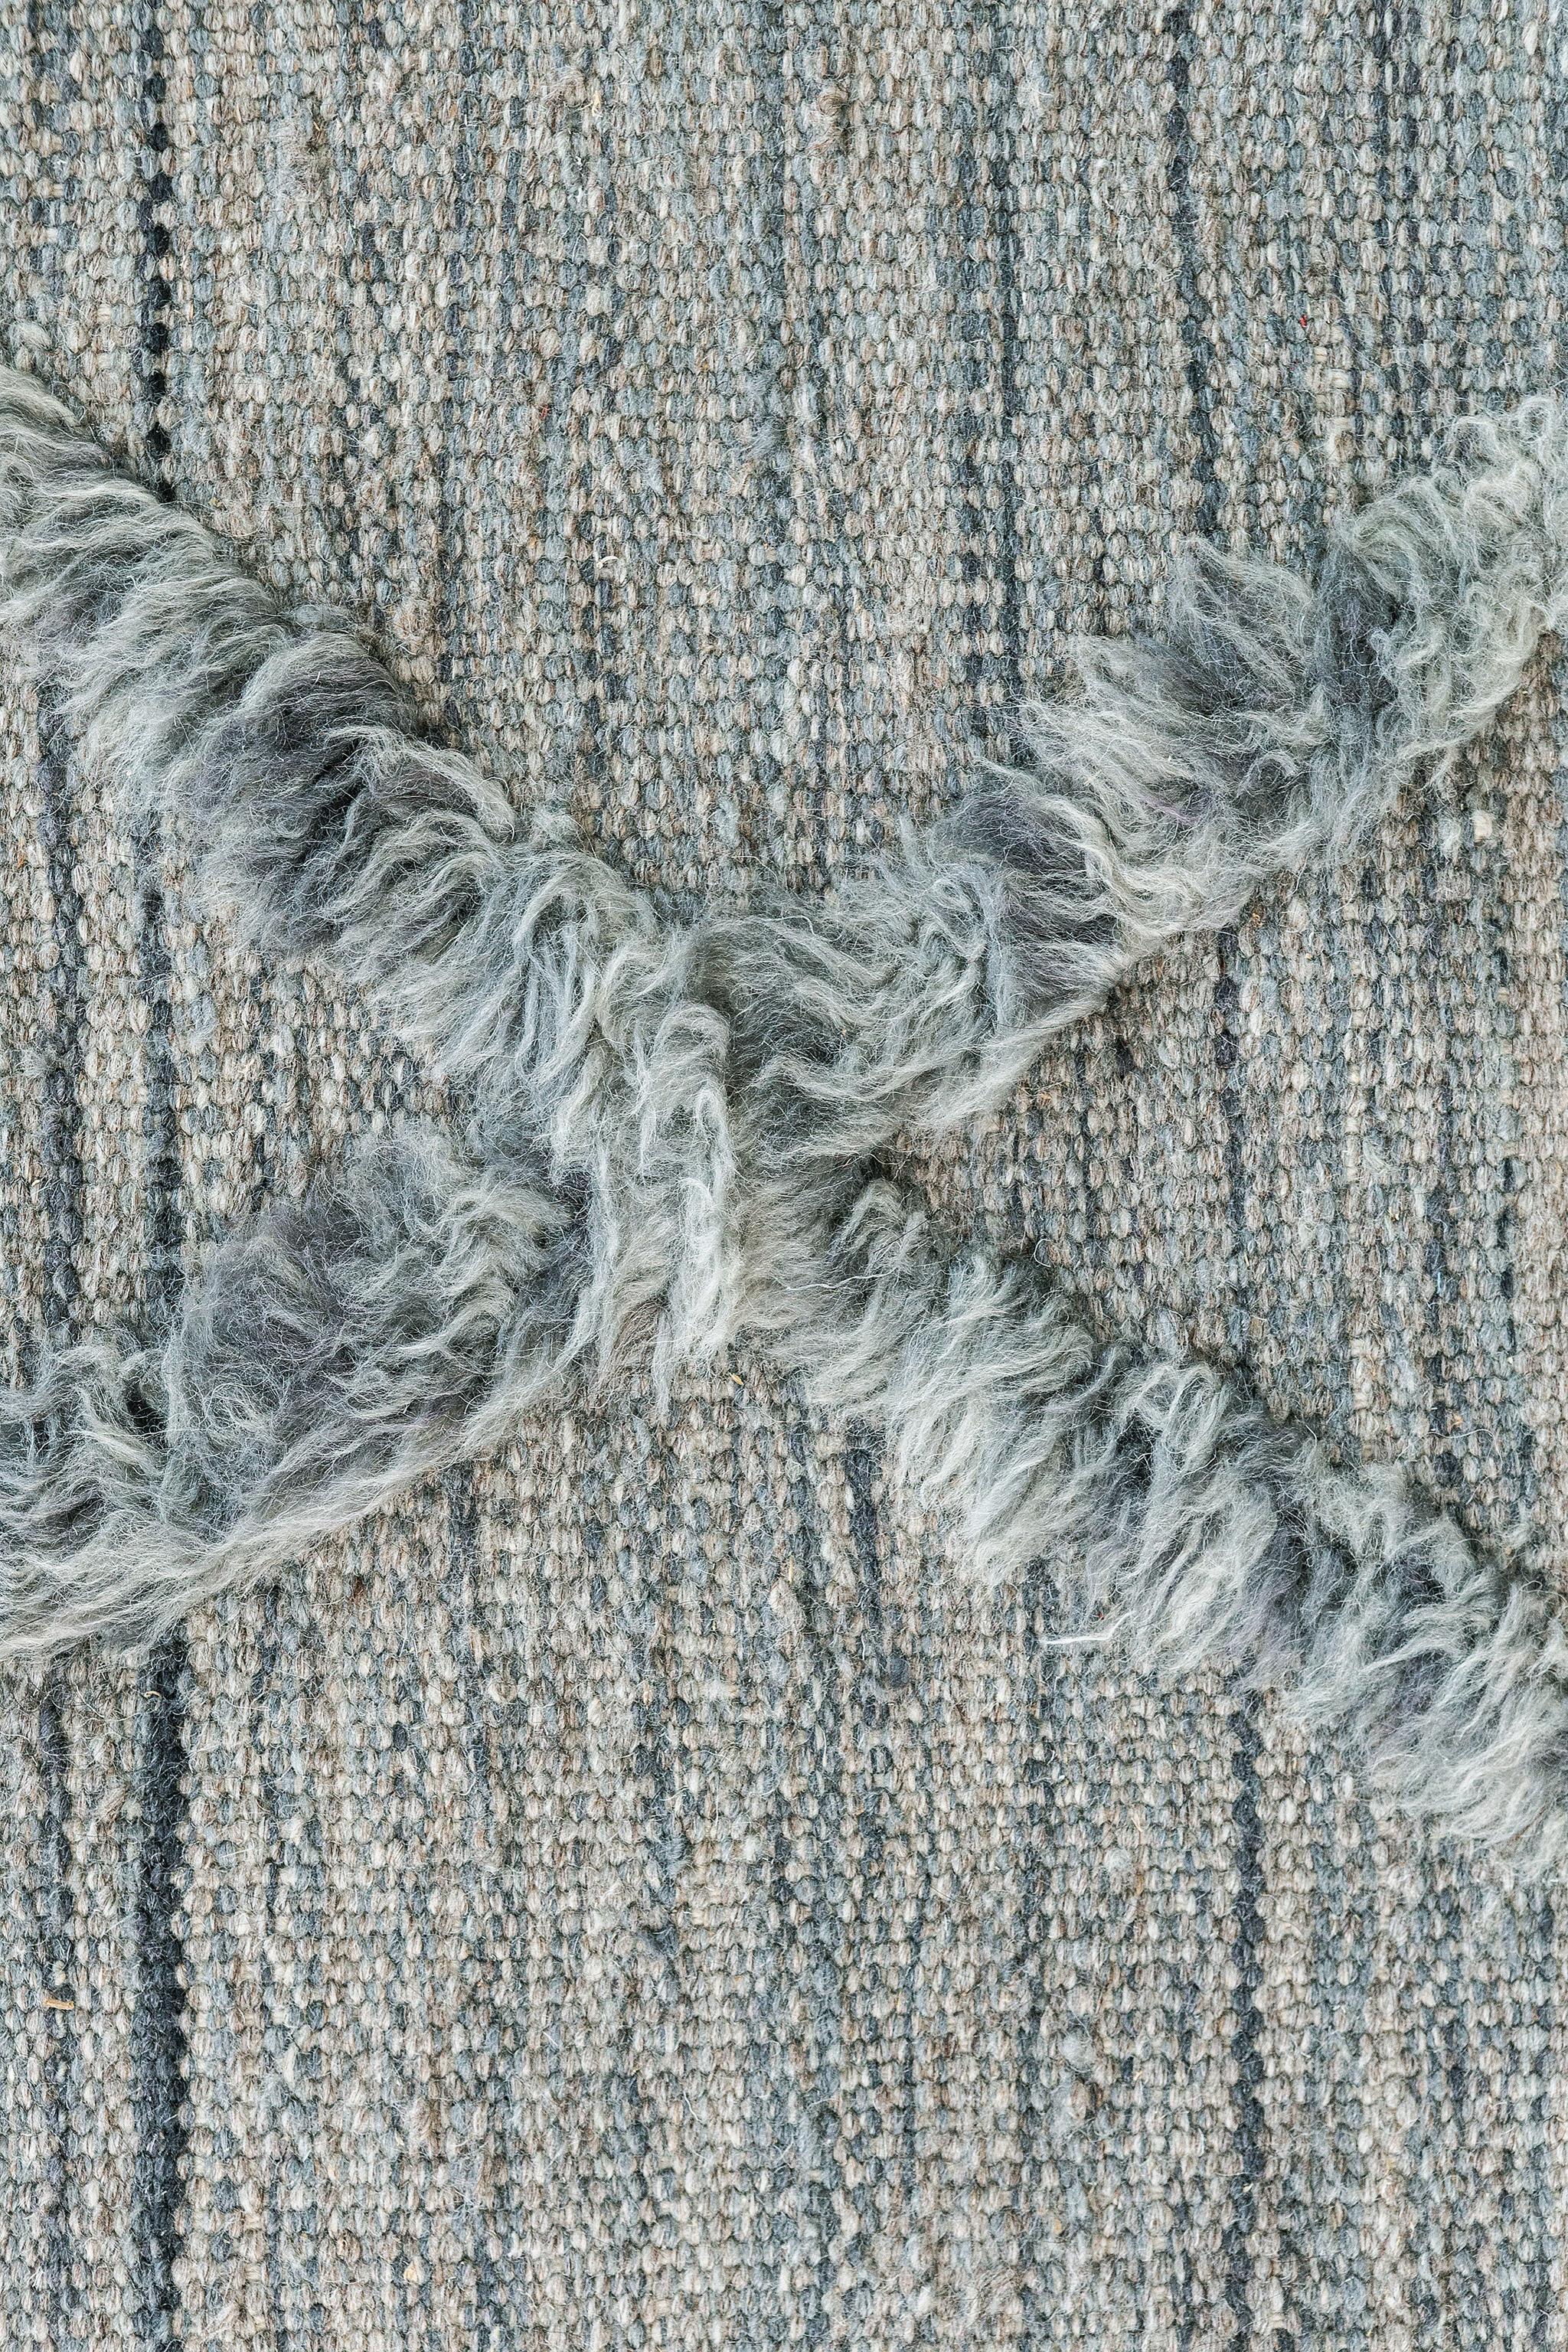 Lassen Sie sich von diesem luxuriösen Teppich aus unserer Atlas Collection verzaubern. Er hat ein durchgehendes Rautenmuster durch die horizontalen Holzkohlestriche und zeigt das Thema des Farbverlaufs, was ihn noch einzigartiger macht. Verwöhnen